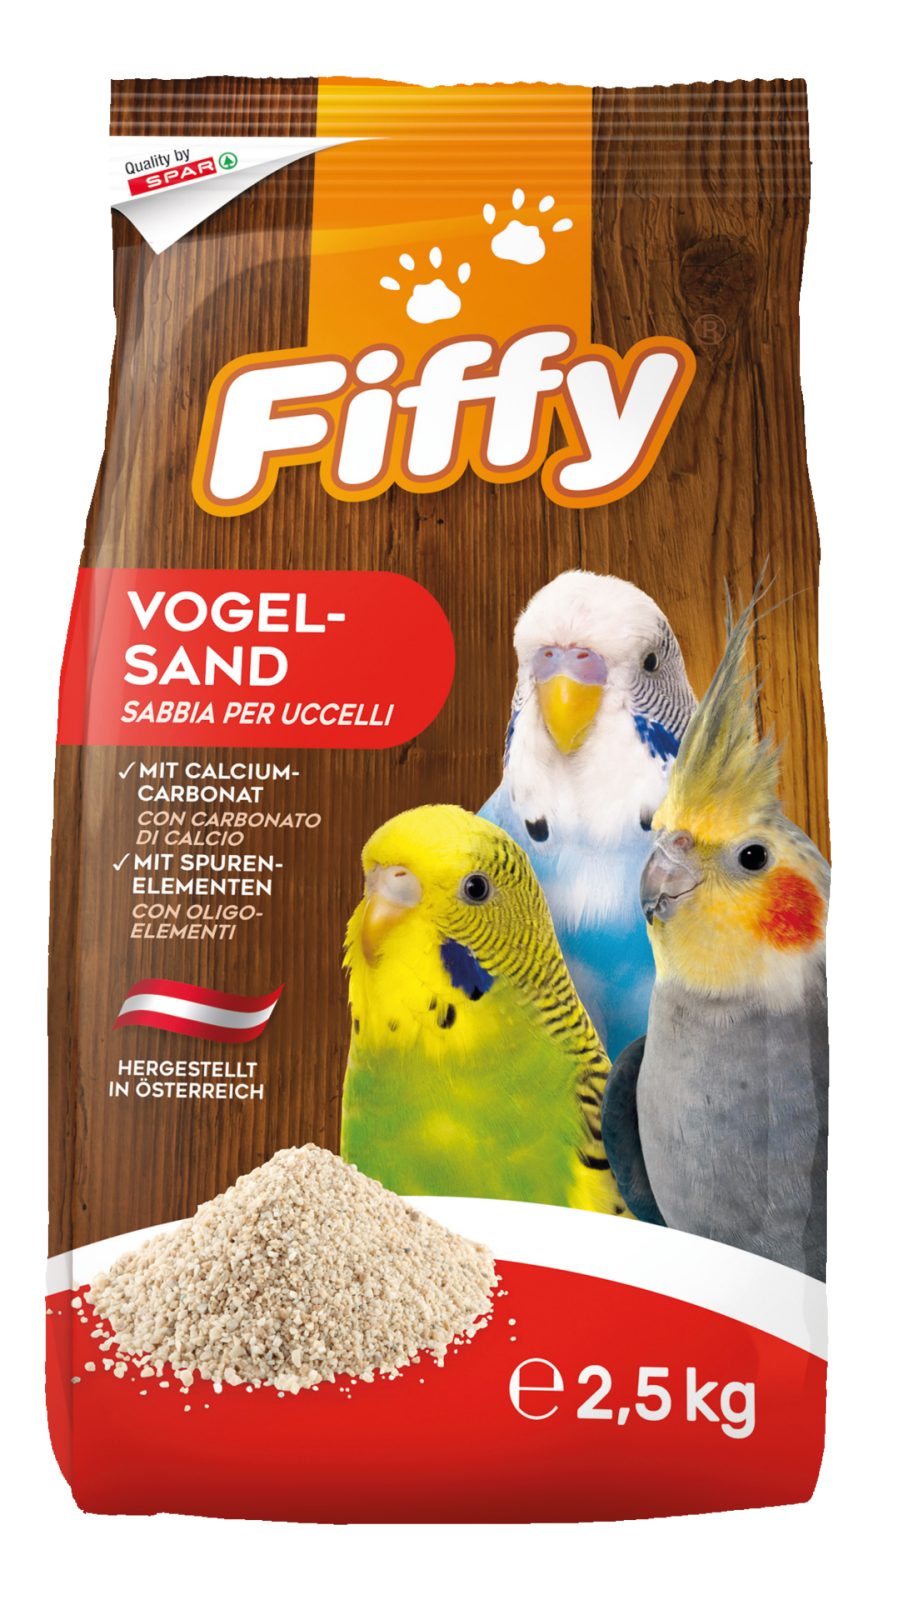 Sabbia per uccelli